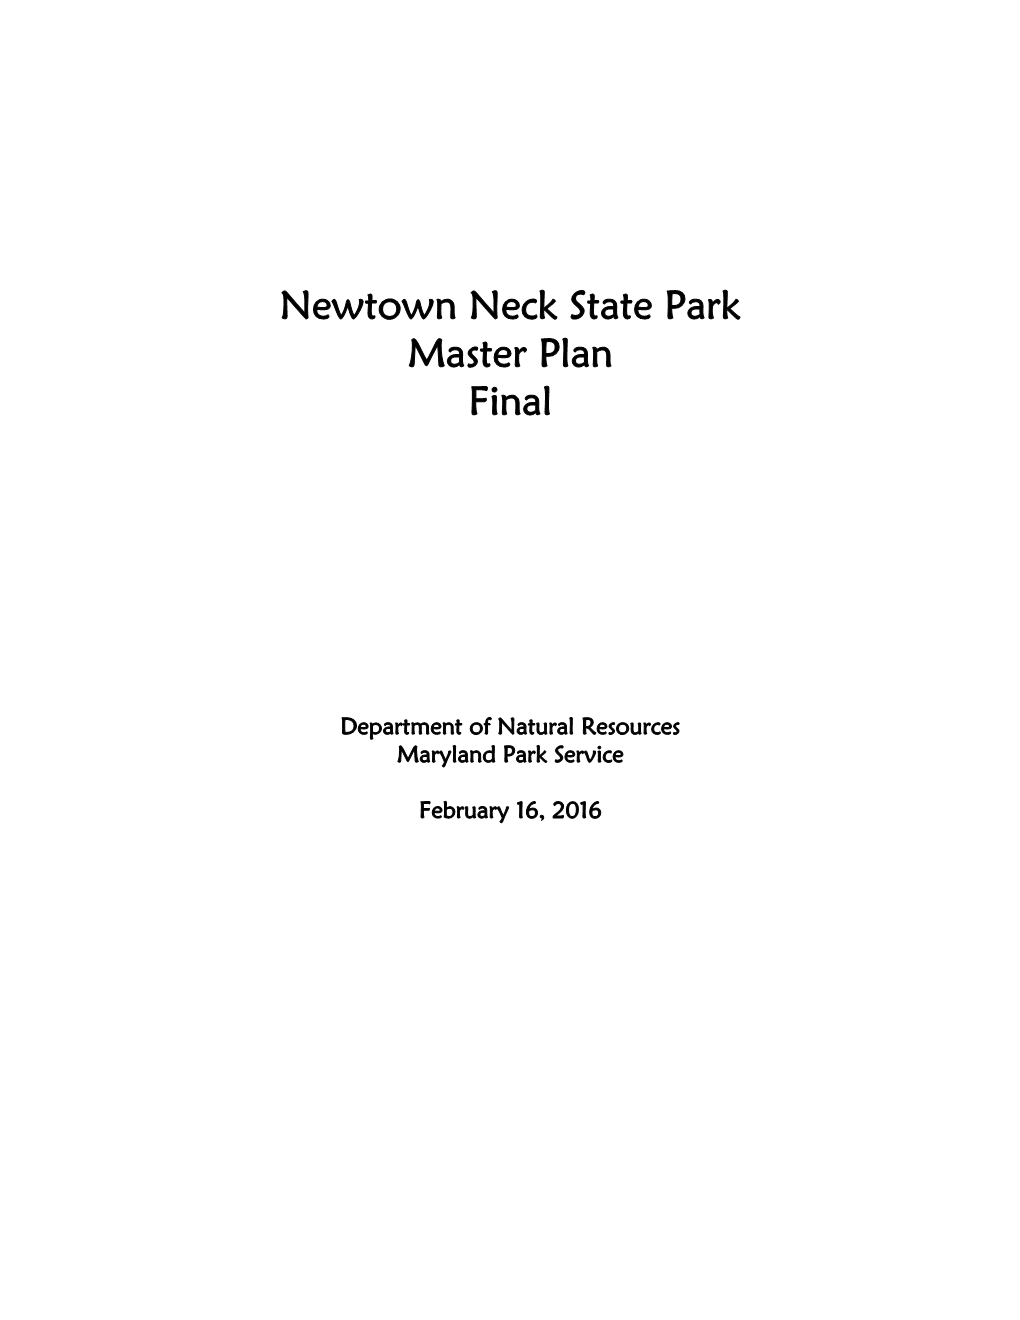 Newtowne Neck State Park Master Plan